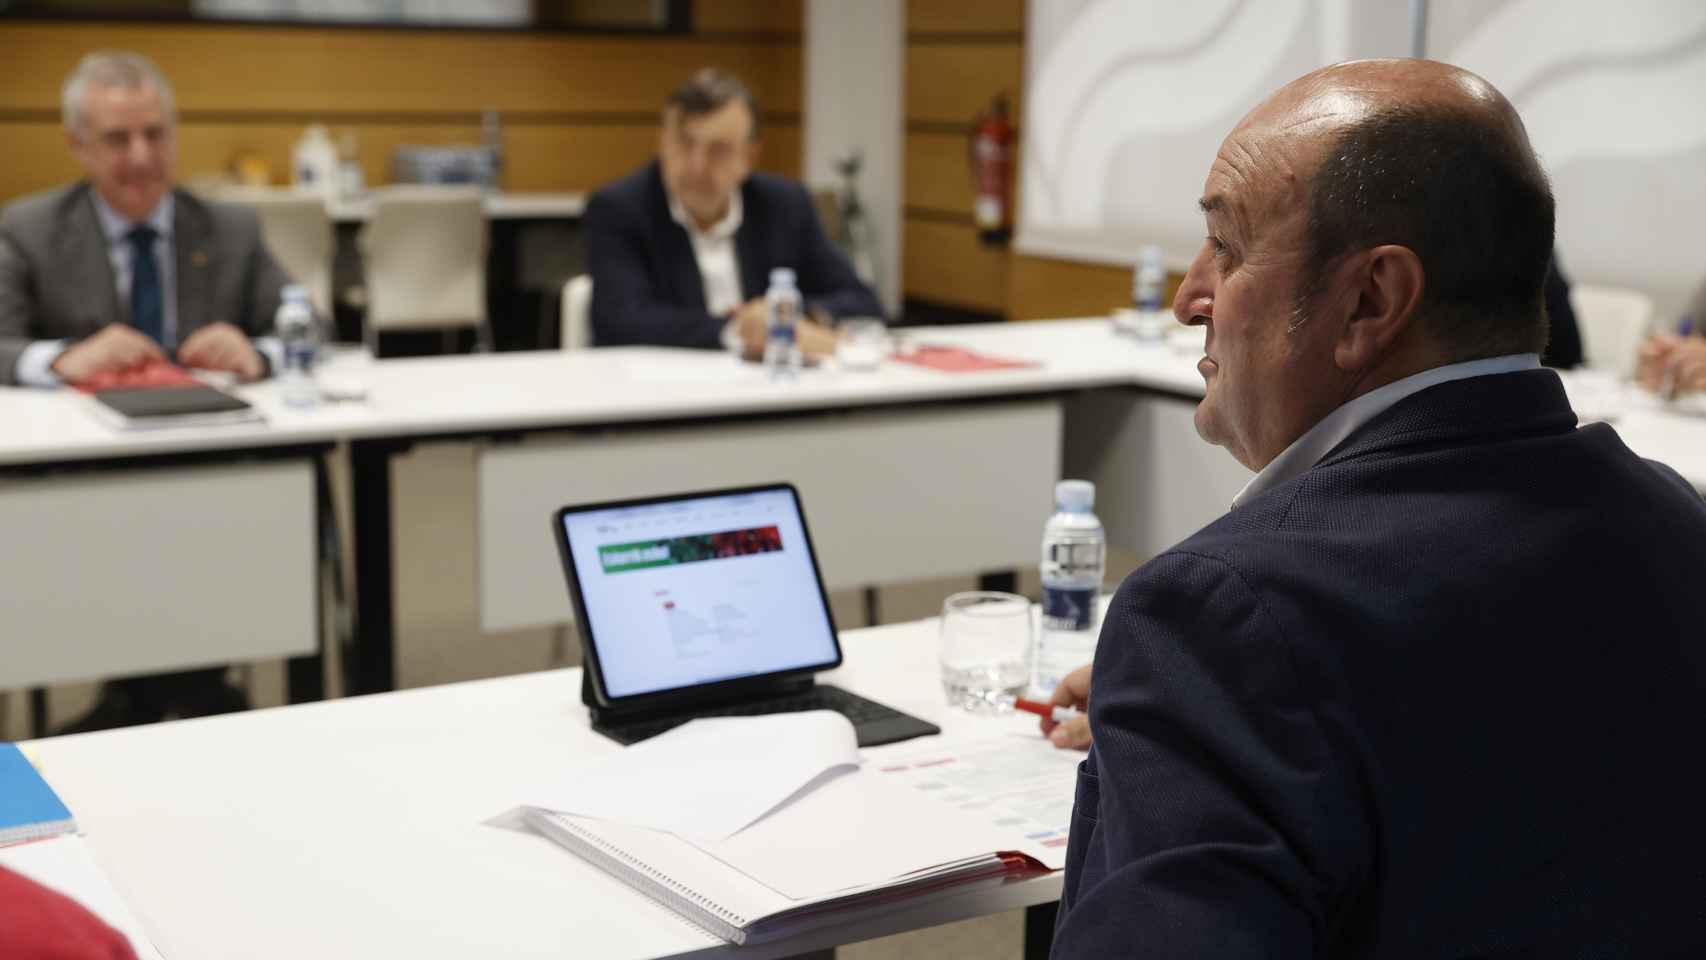 El Euskadi Buru Batzar, el comité ejecutivo nacional del PNV, se reunía este lunes en Bilbao/EFE